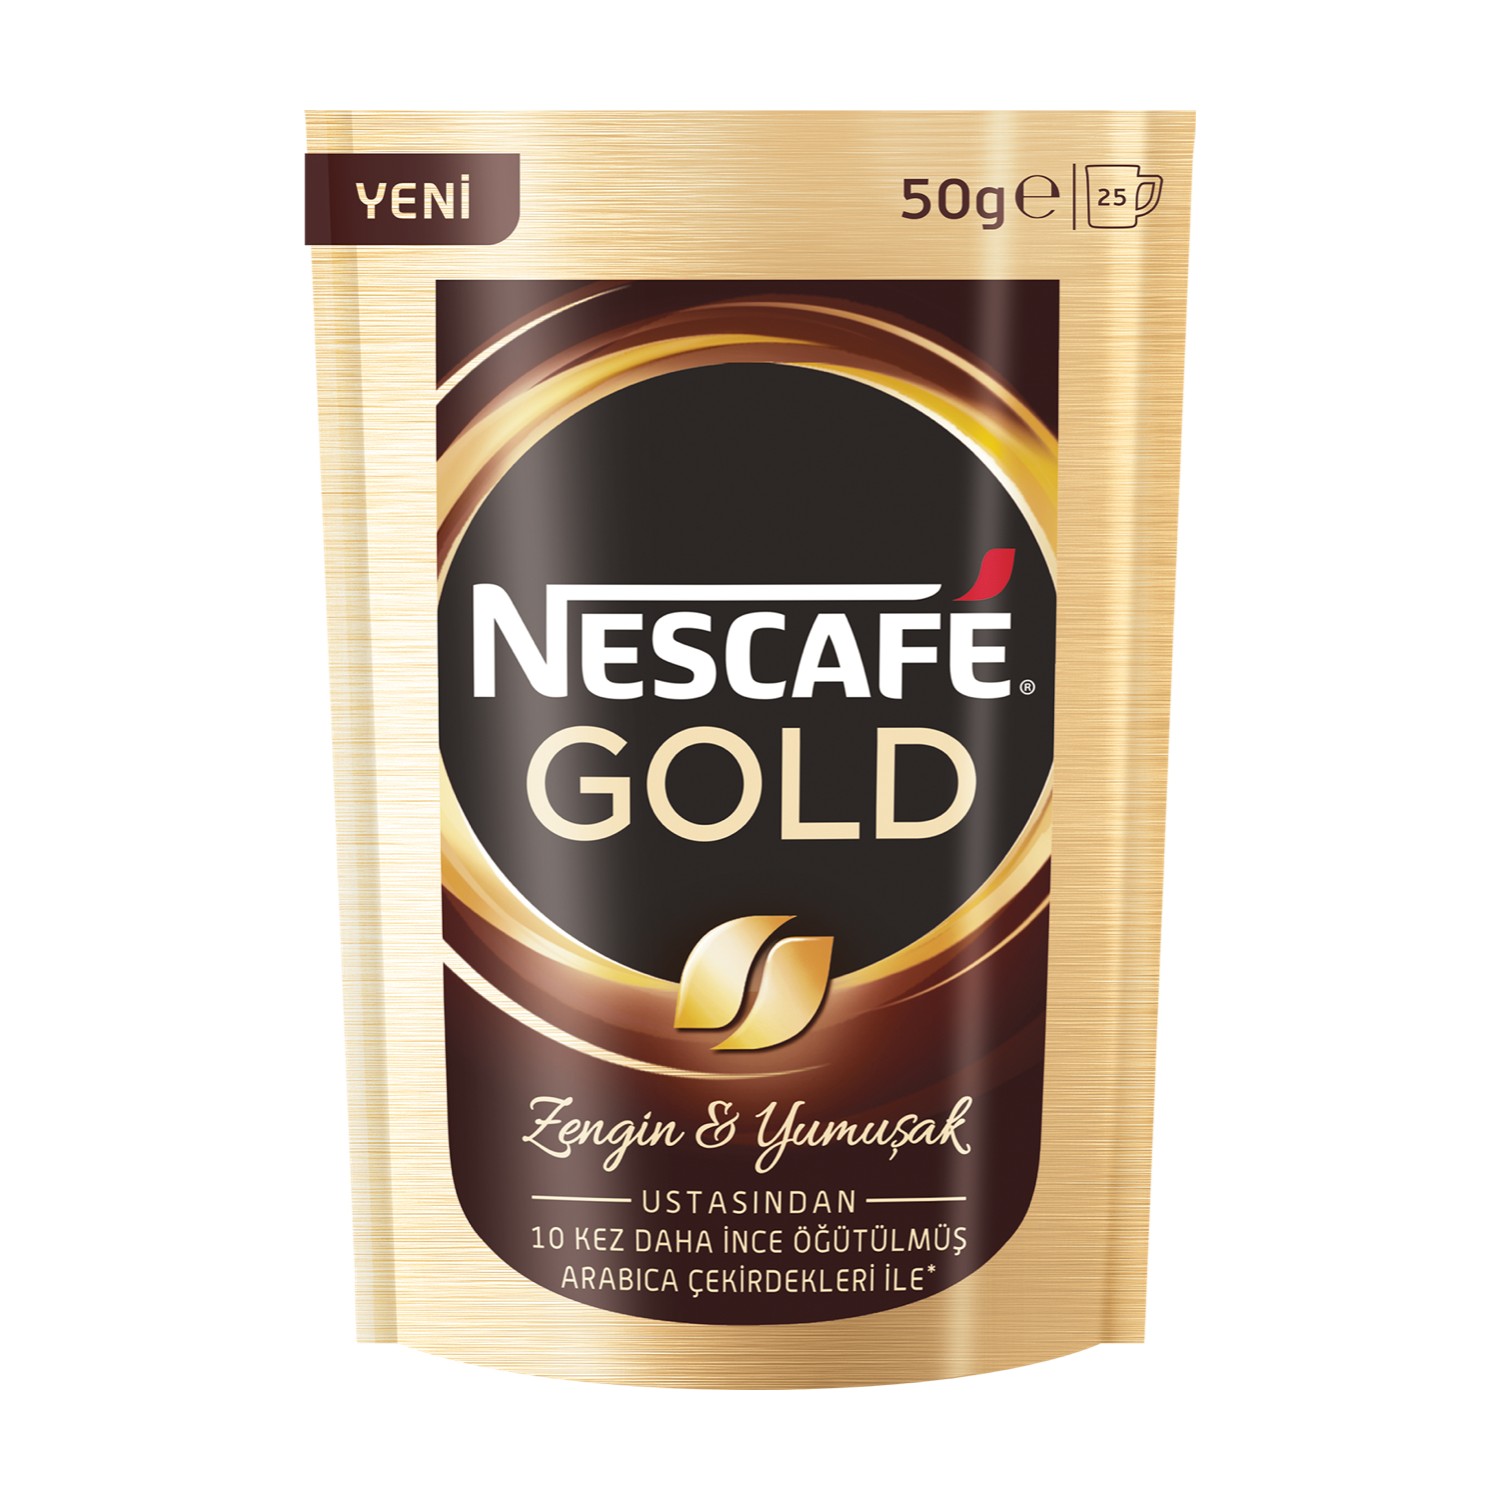 NESCAFE GOLD 50 G *1